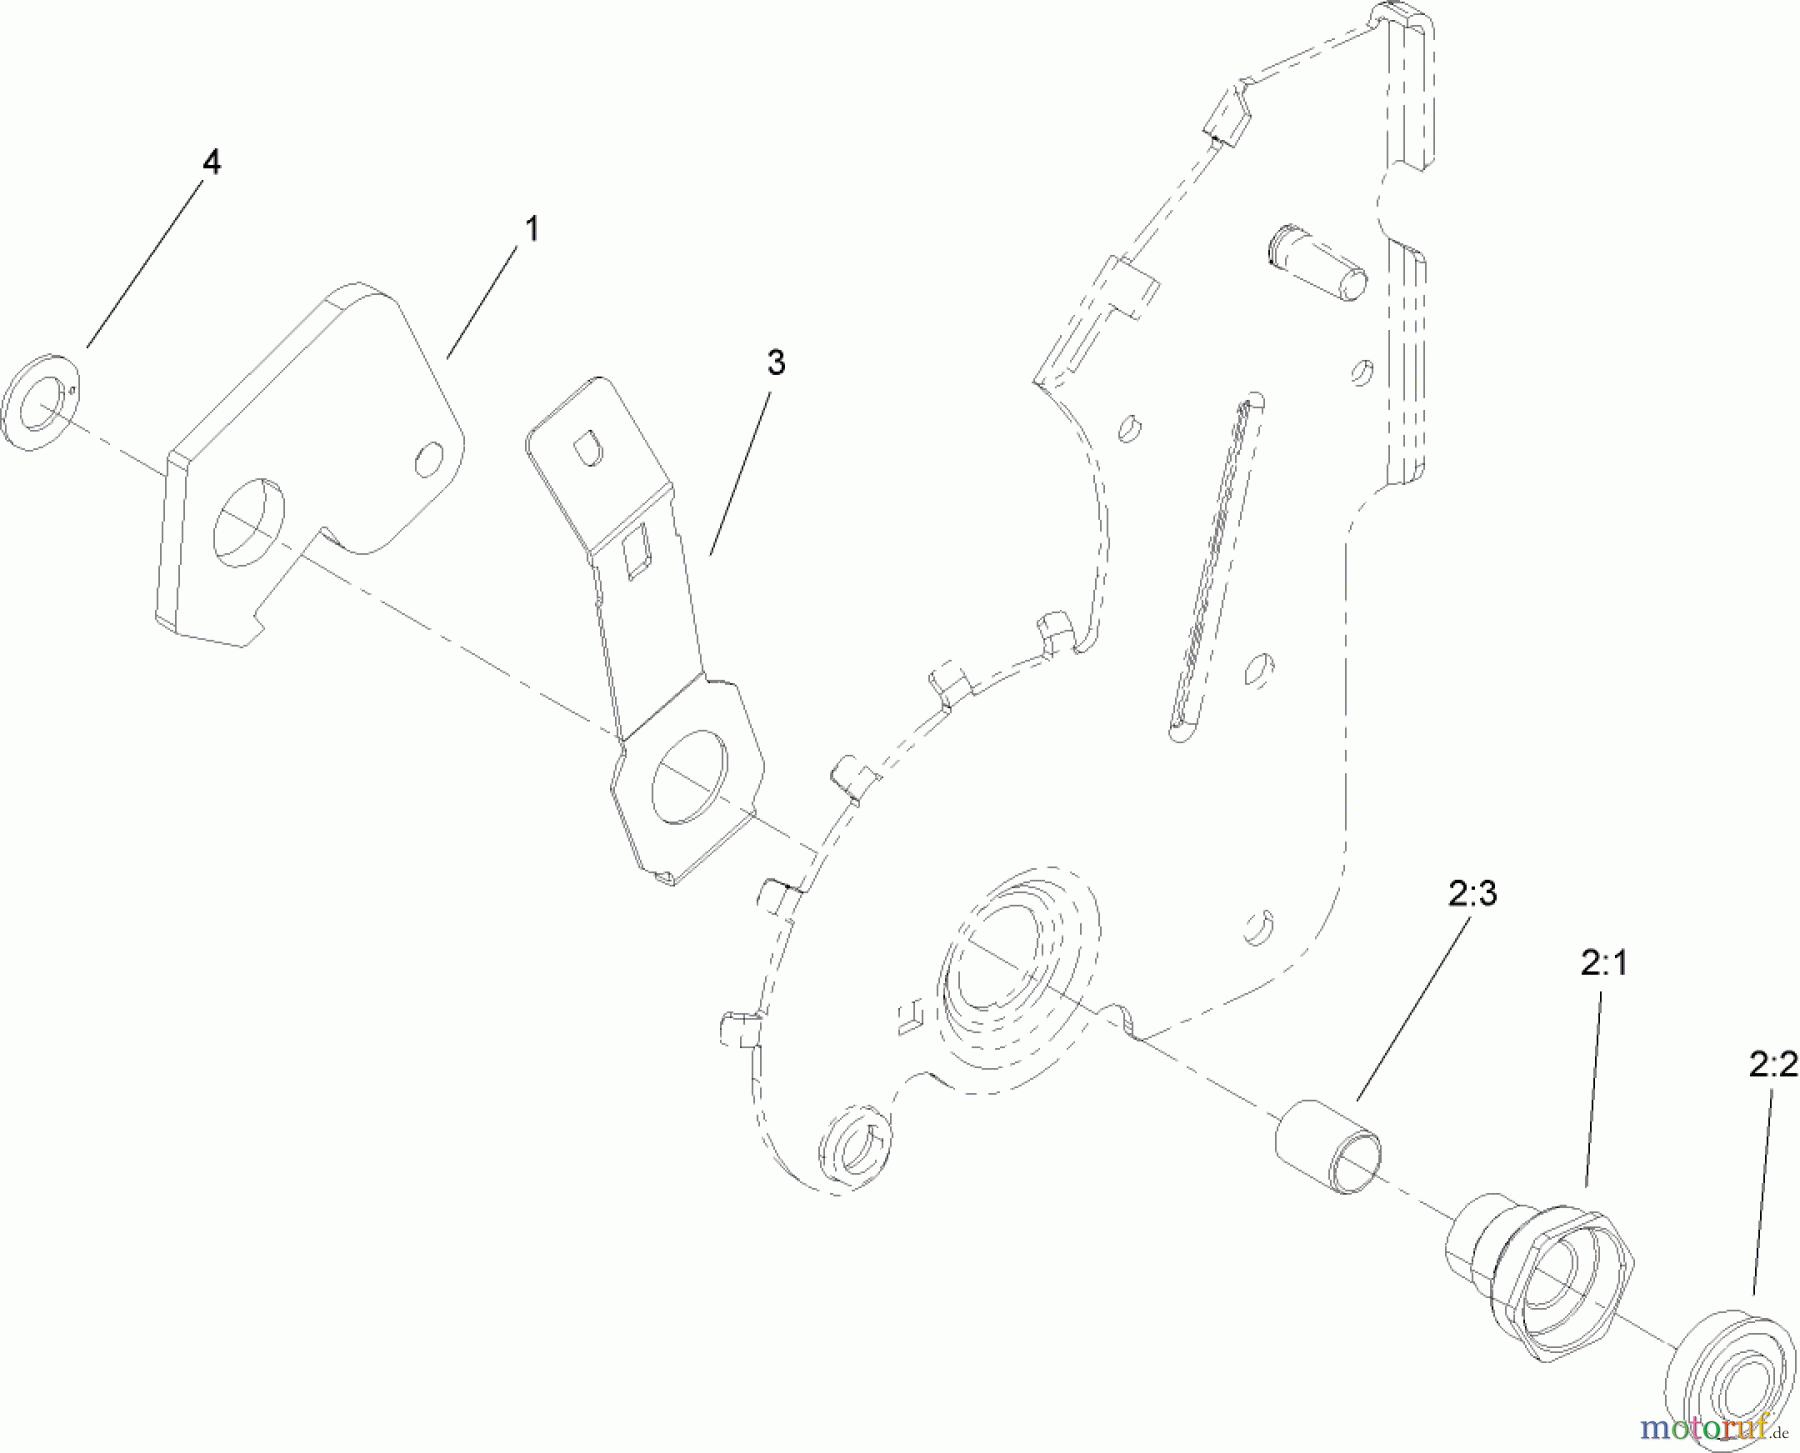  Toro Neu Accessories, Mower 114-2683 - Toro Threaded Pivot Arm Update Kit, 22